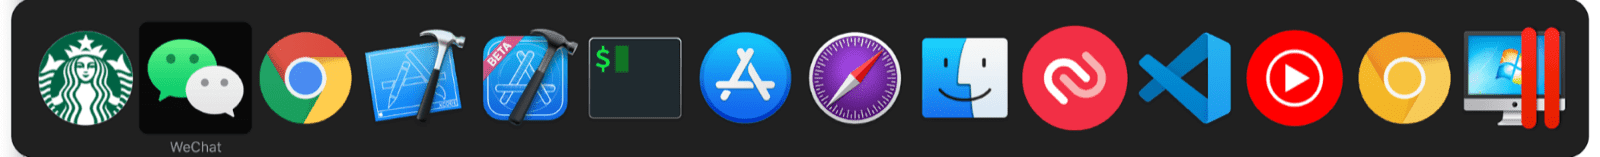 El selector de multitareas de macOS incluye miniapps junto con la app estándar de macOS.